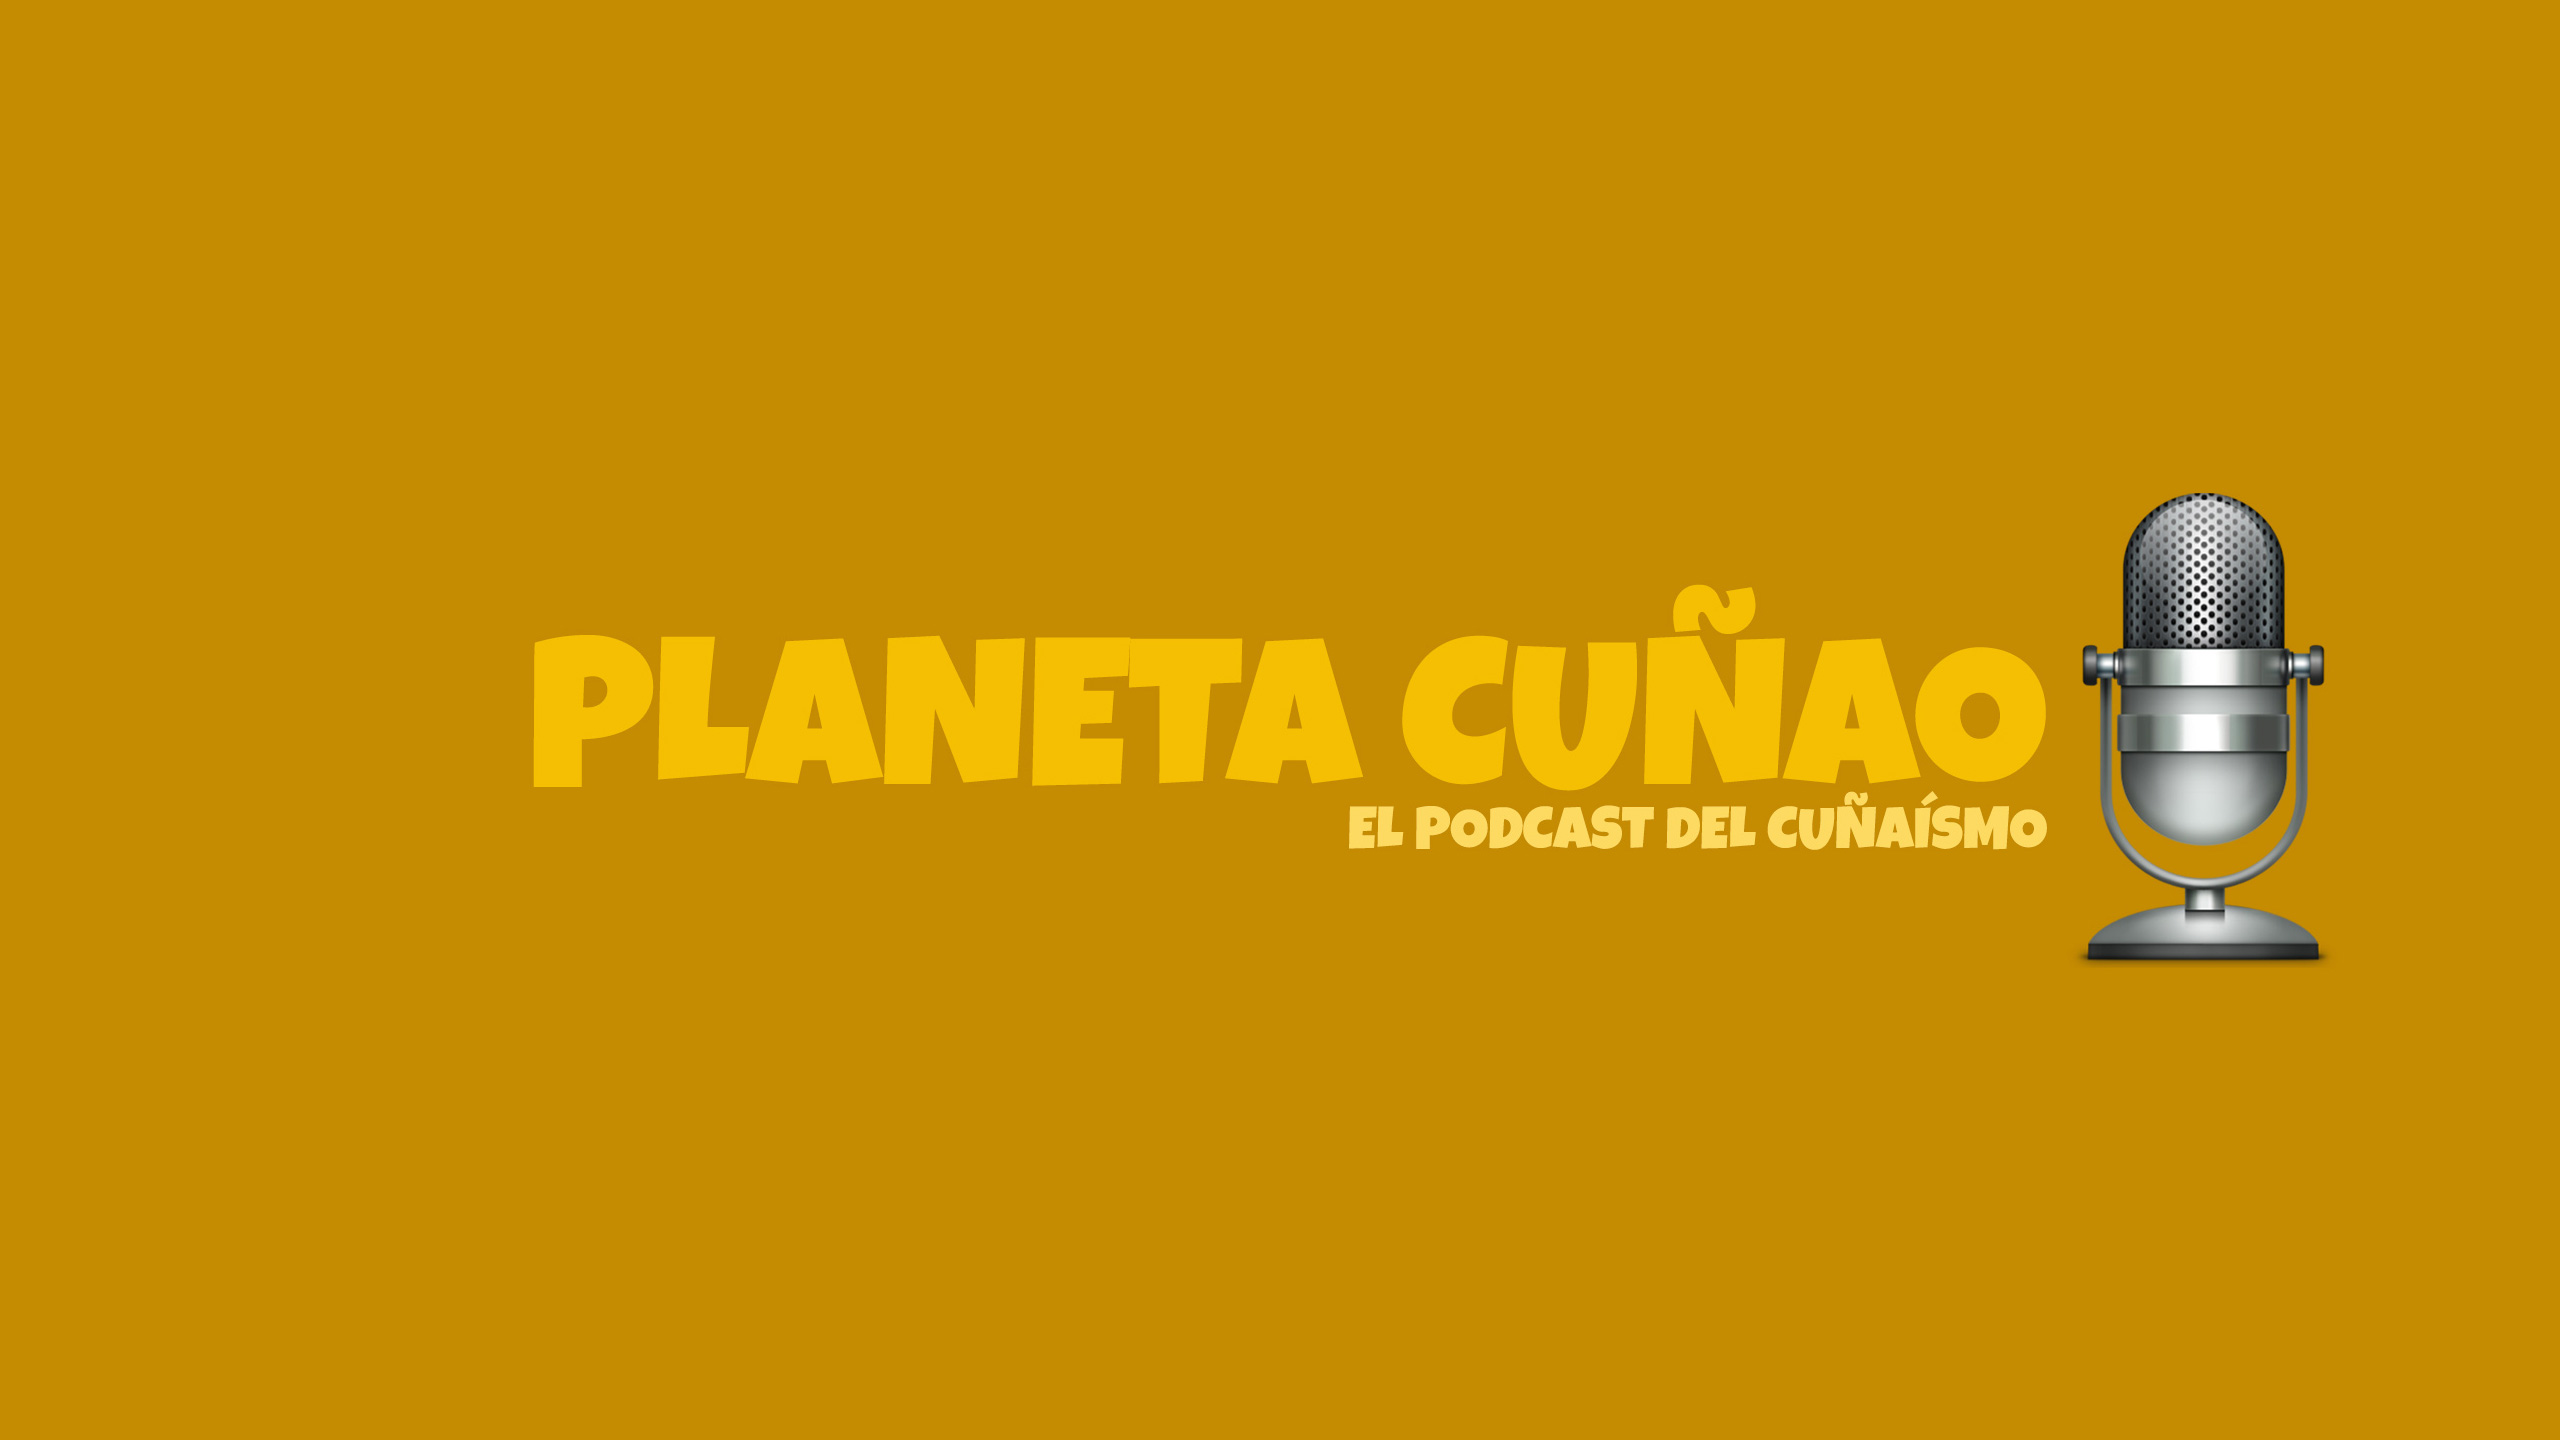 Lanzamos el podcast Planeta Cuñao